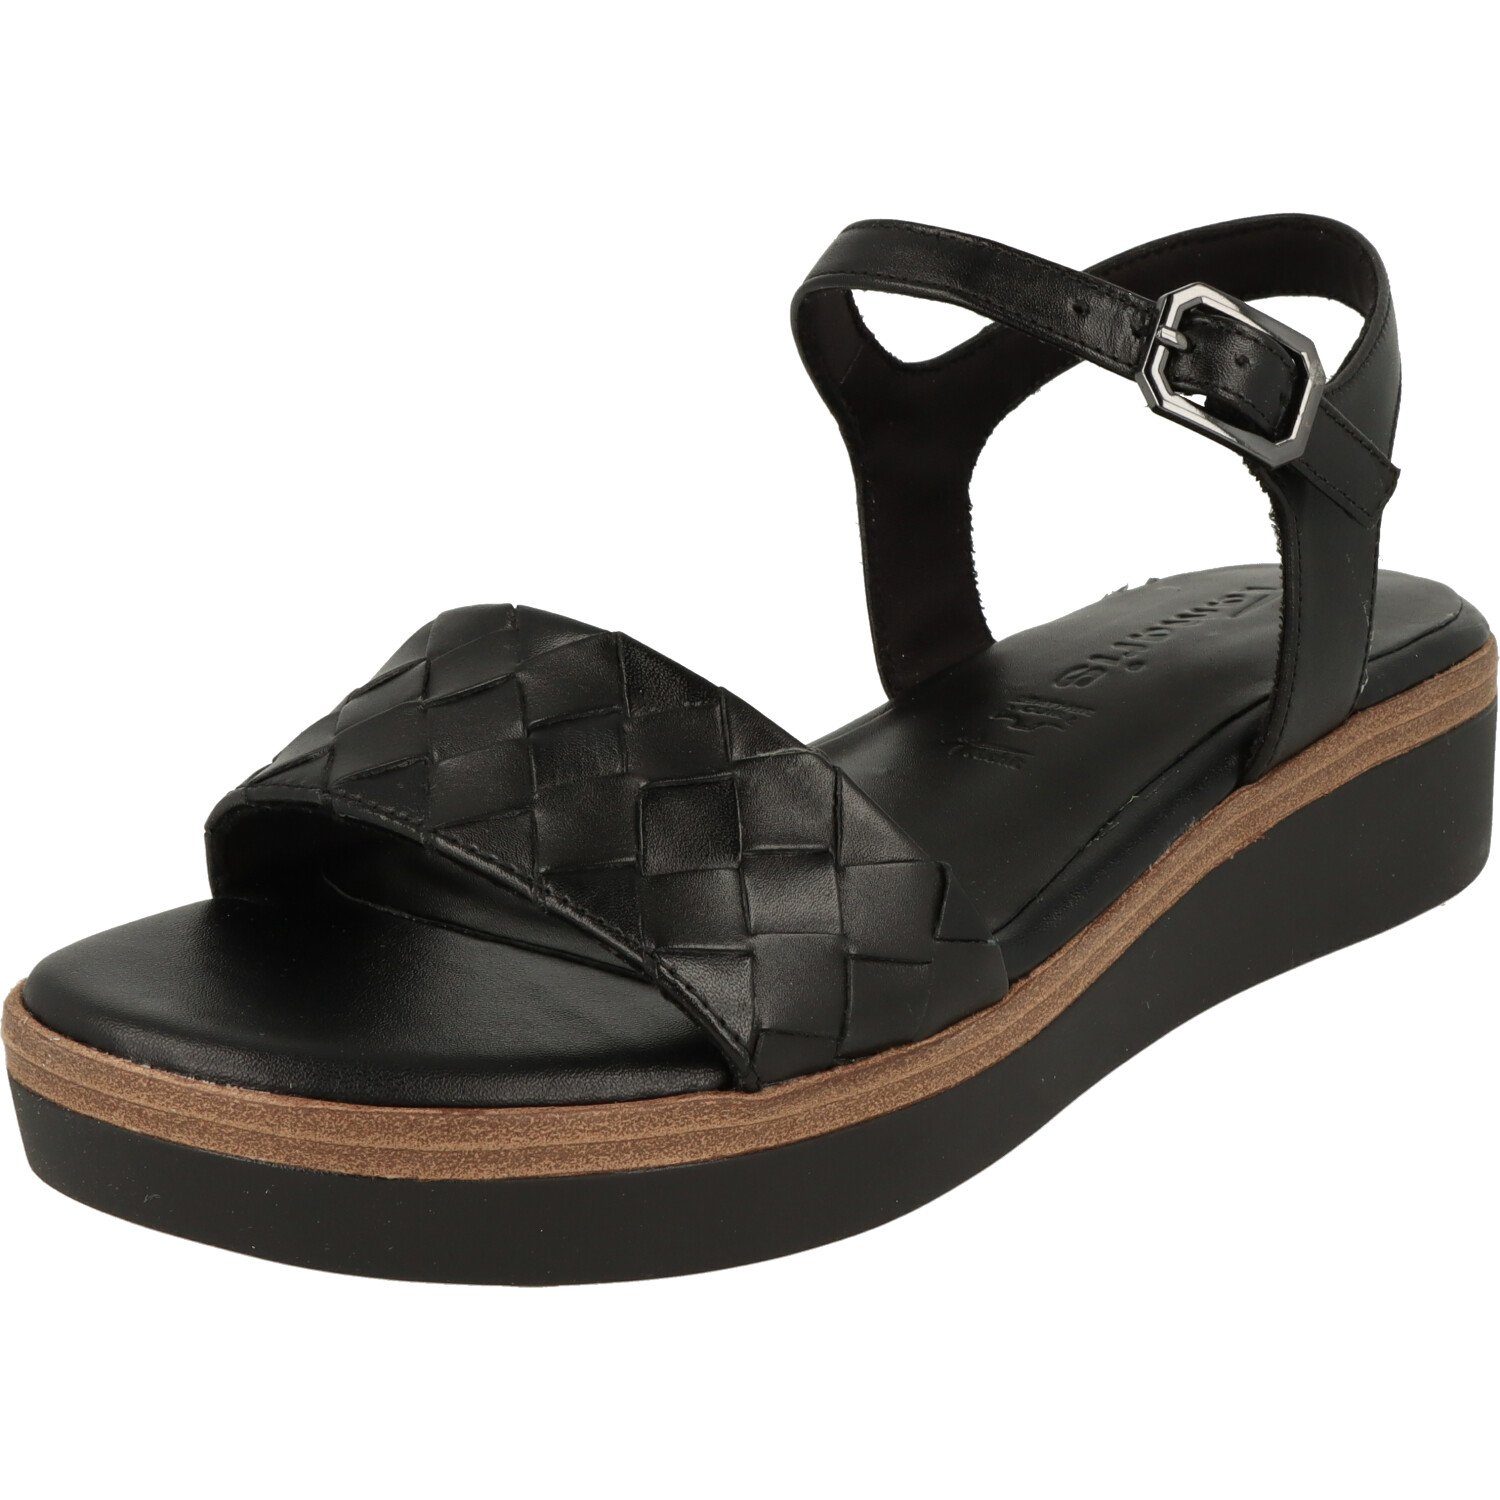 Leder Tamaris Sandalette Damen Schuhe Black Sandalette 1-28216-20 Riemchen Komfort